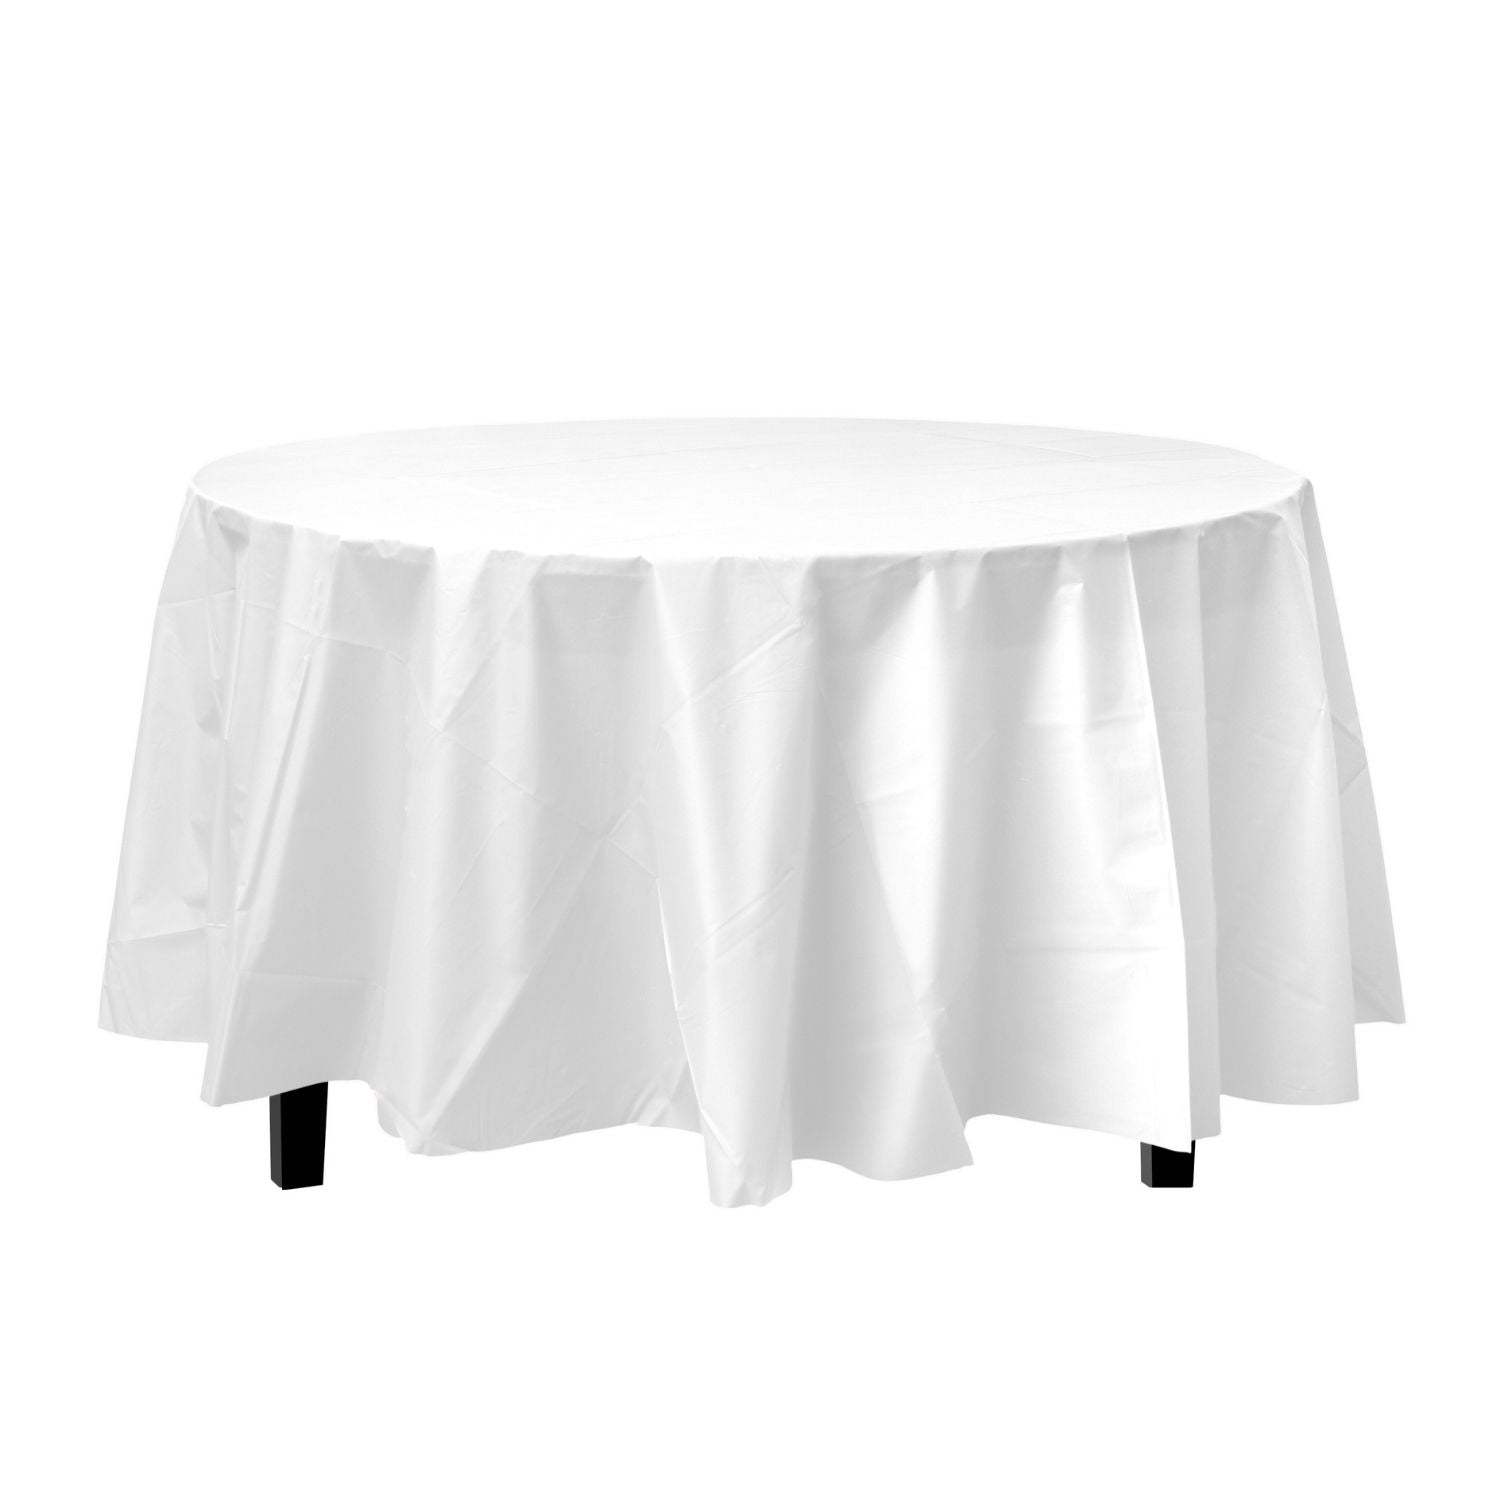 Premium Round White Plastic Tablecloth | 96 Count